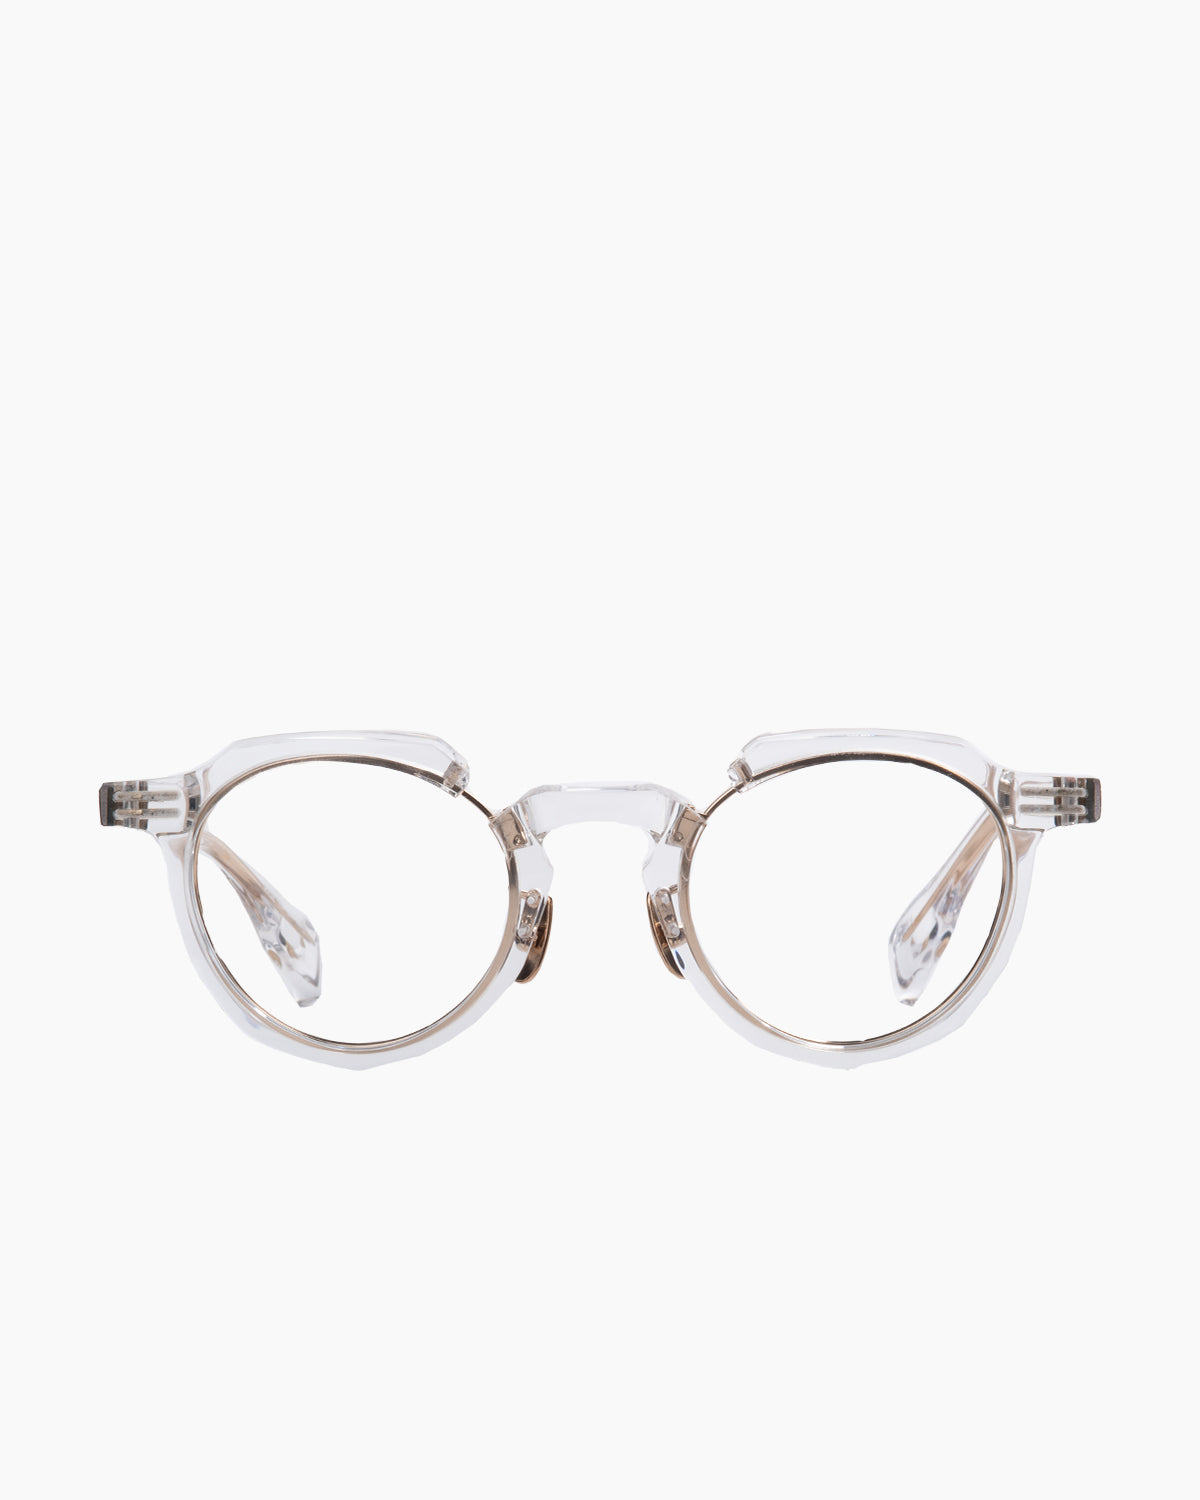 Factory 900 - RF-171 - 827 | Bar à lunettes:  Marie-Sophie Dion